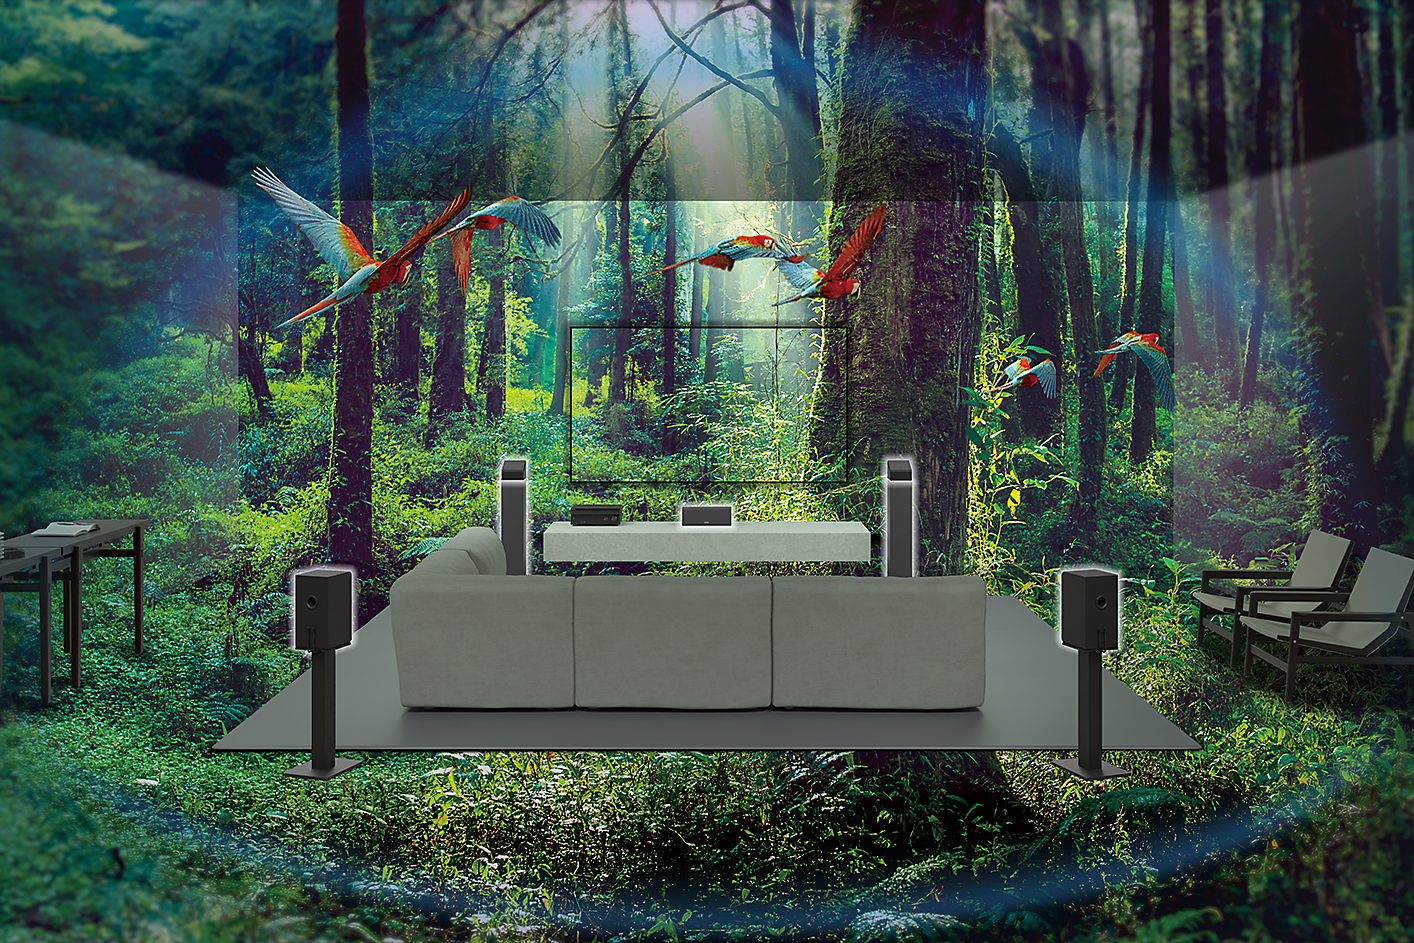 Obrázok sedačky, televízora a reproduktorov uprostred lesa, okolo lietajú papagáje